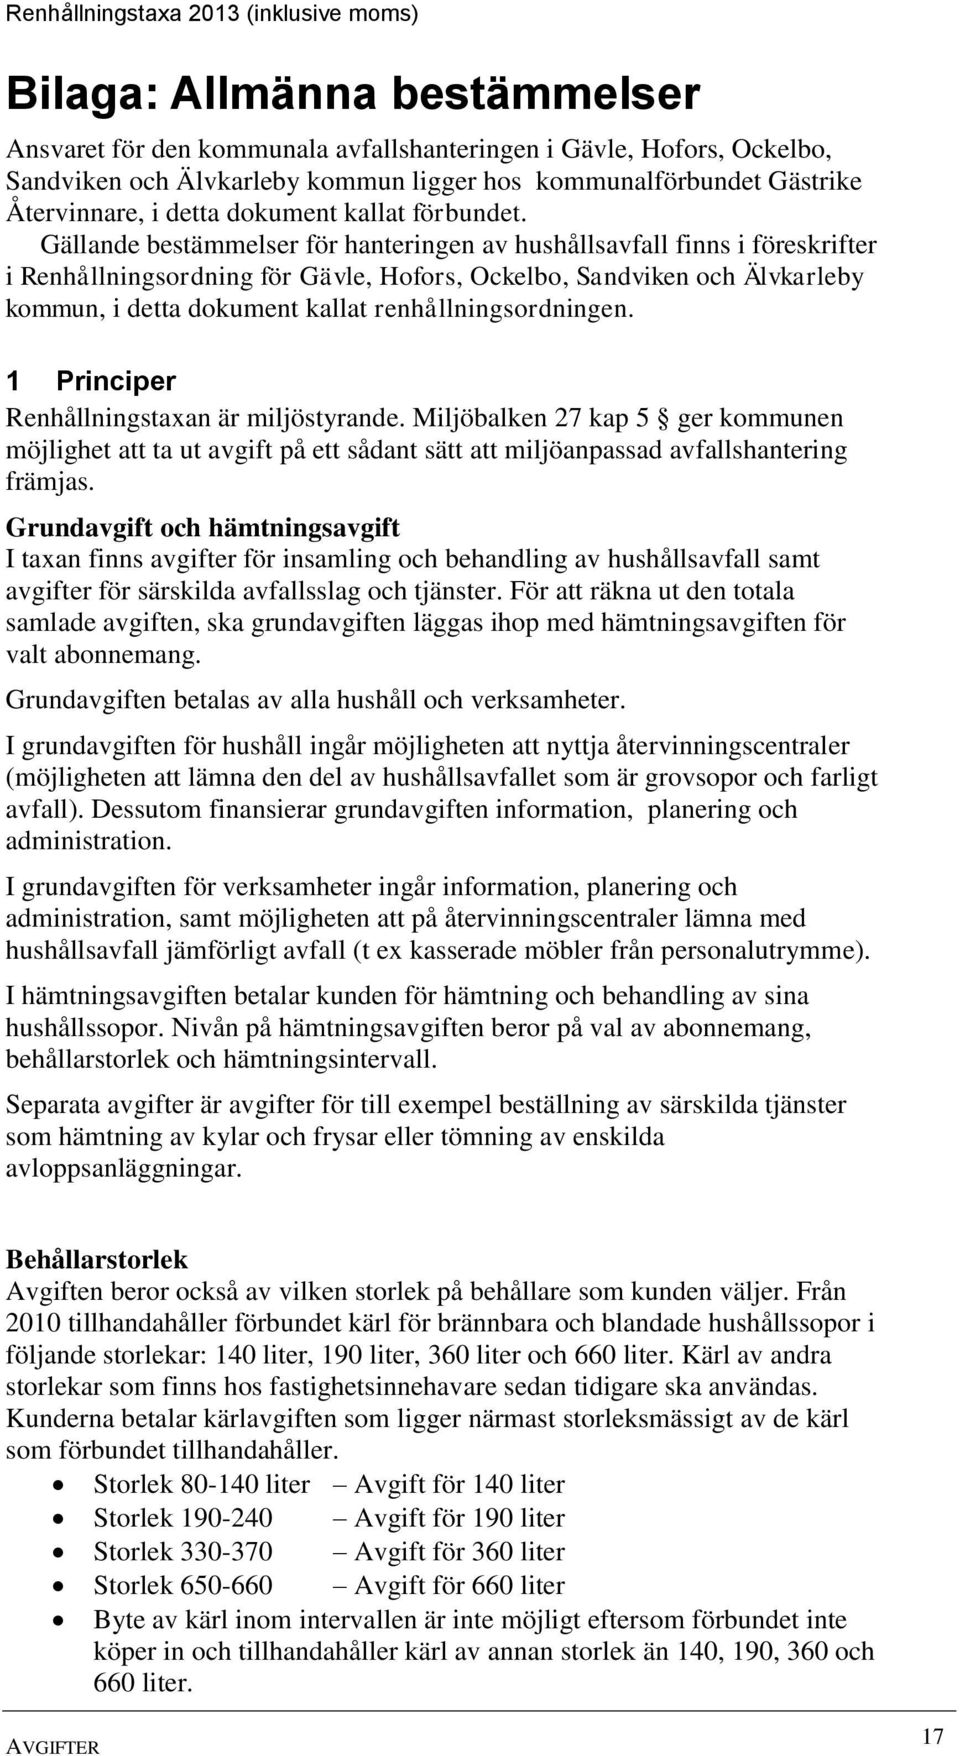 Gällande bestämmelser för hanteringen av hushållsavfall finns i föreskrifter i Renhållningsordning för Gävle, Hofors, Ockelbo, Sandviken och Älvkarleby kommun, i detta dokument kallat